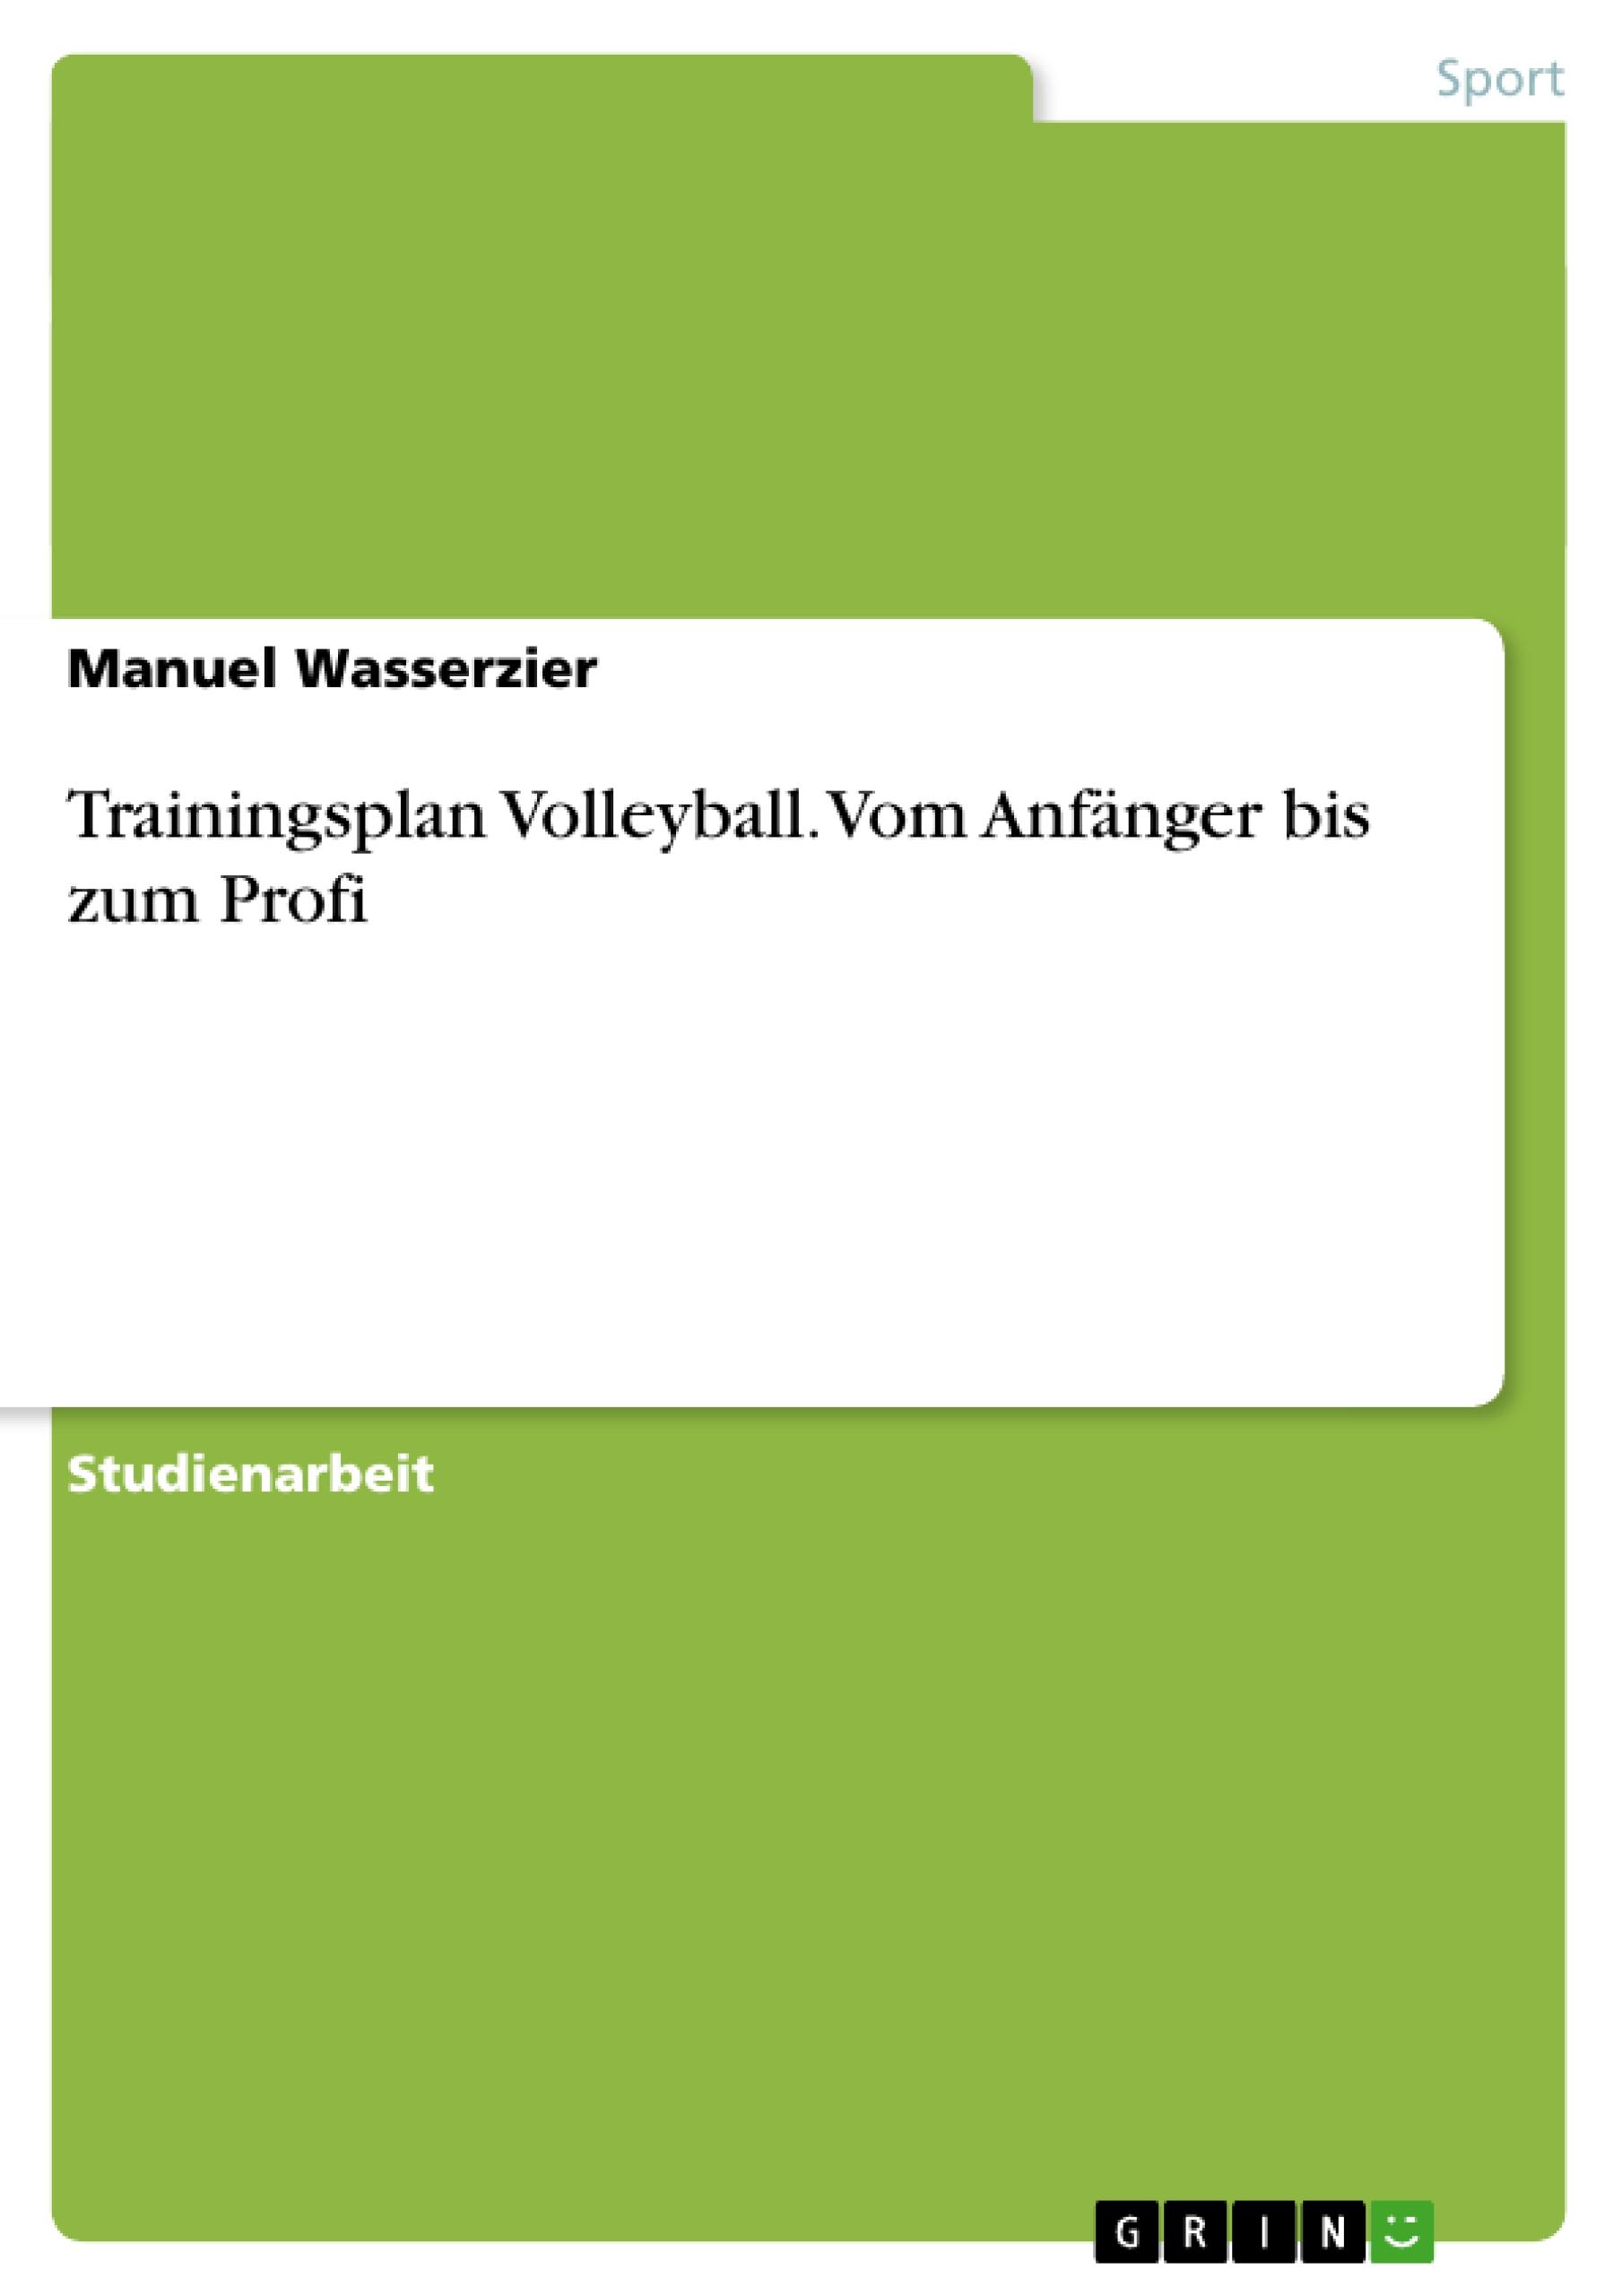 Trainingsplan Volleyball. Vom Anfänger bis zum Profi / Manuel Wasserzier / Taschenbuch / Paperback / 36 S. / Deutsch / 2009 / GRIN Verlag / EAN 9783640287598 - Wasserzier, Manuel